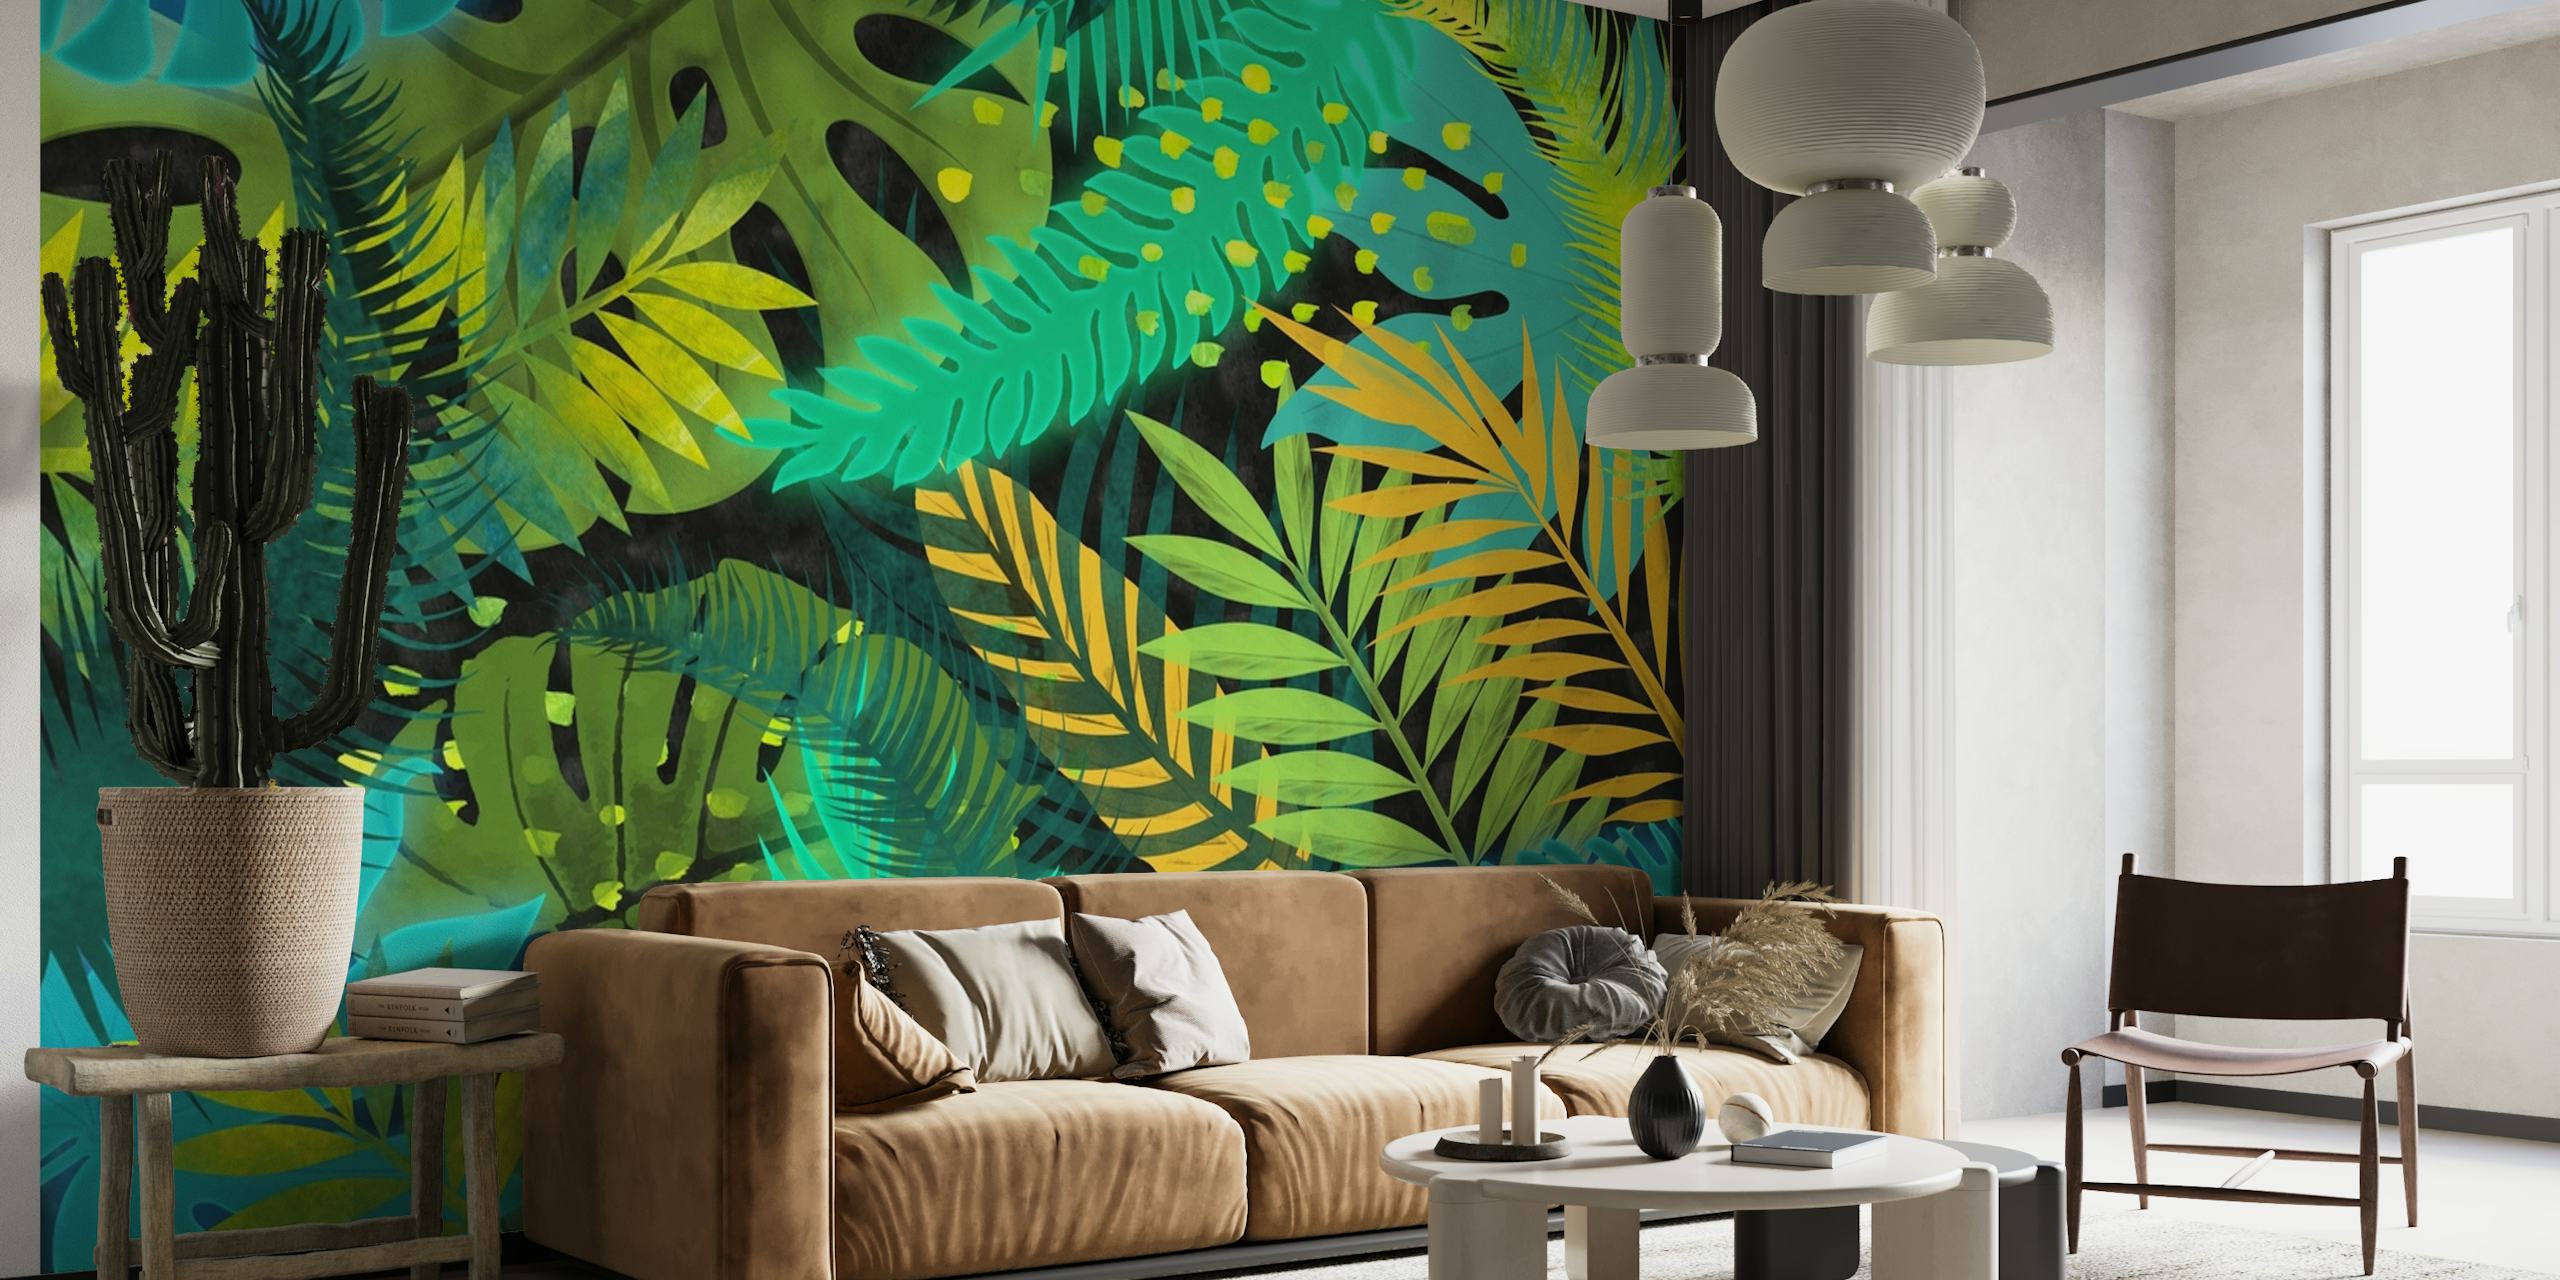 Fotomural vinílico de folhagem tropical com folhas azuis, verdes e amarelas para decoração de interiores